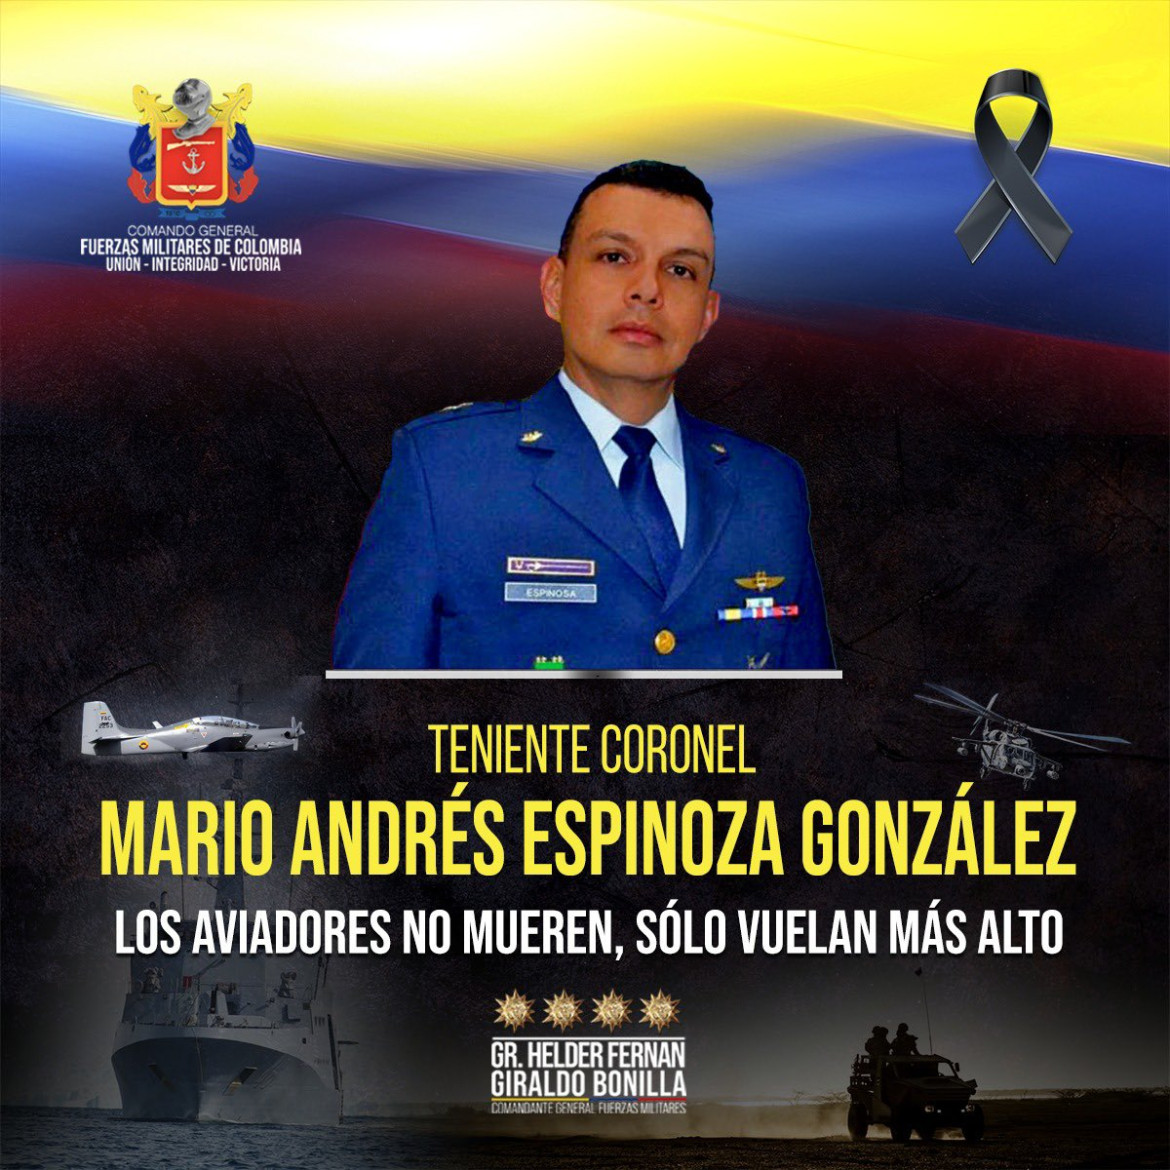 El mensaje de despedida a Mario Andrés Espinoza González, fallecido en el accidente de avión. Foto: Twitter.